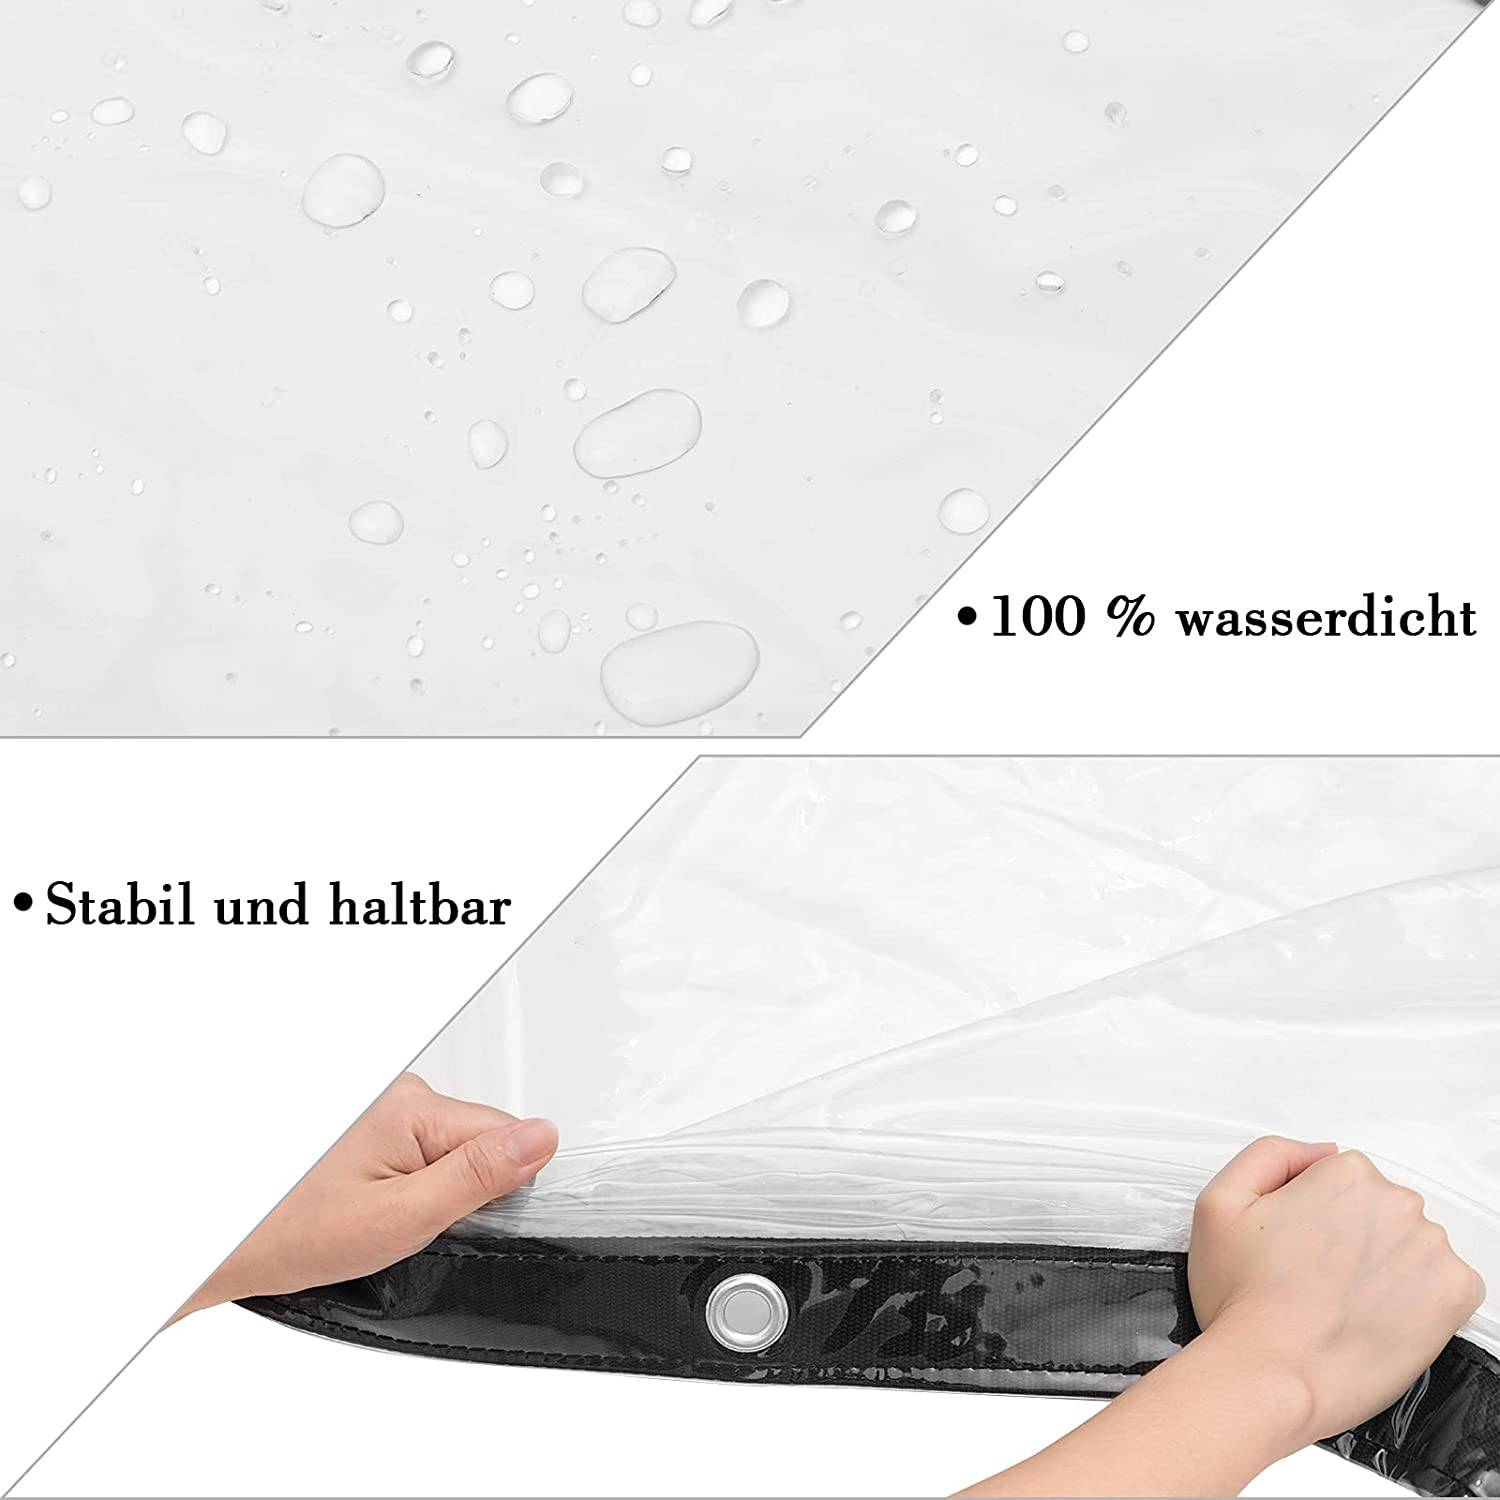 Bâche de Protection Transparente Imperméable en PVC 360g/m² avec Oeillets -  Résistante aux Intempéries (1m x